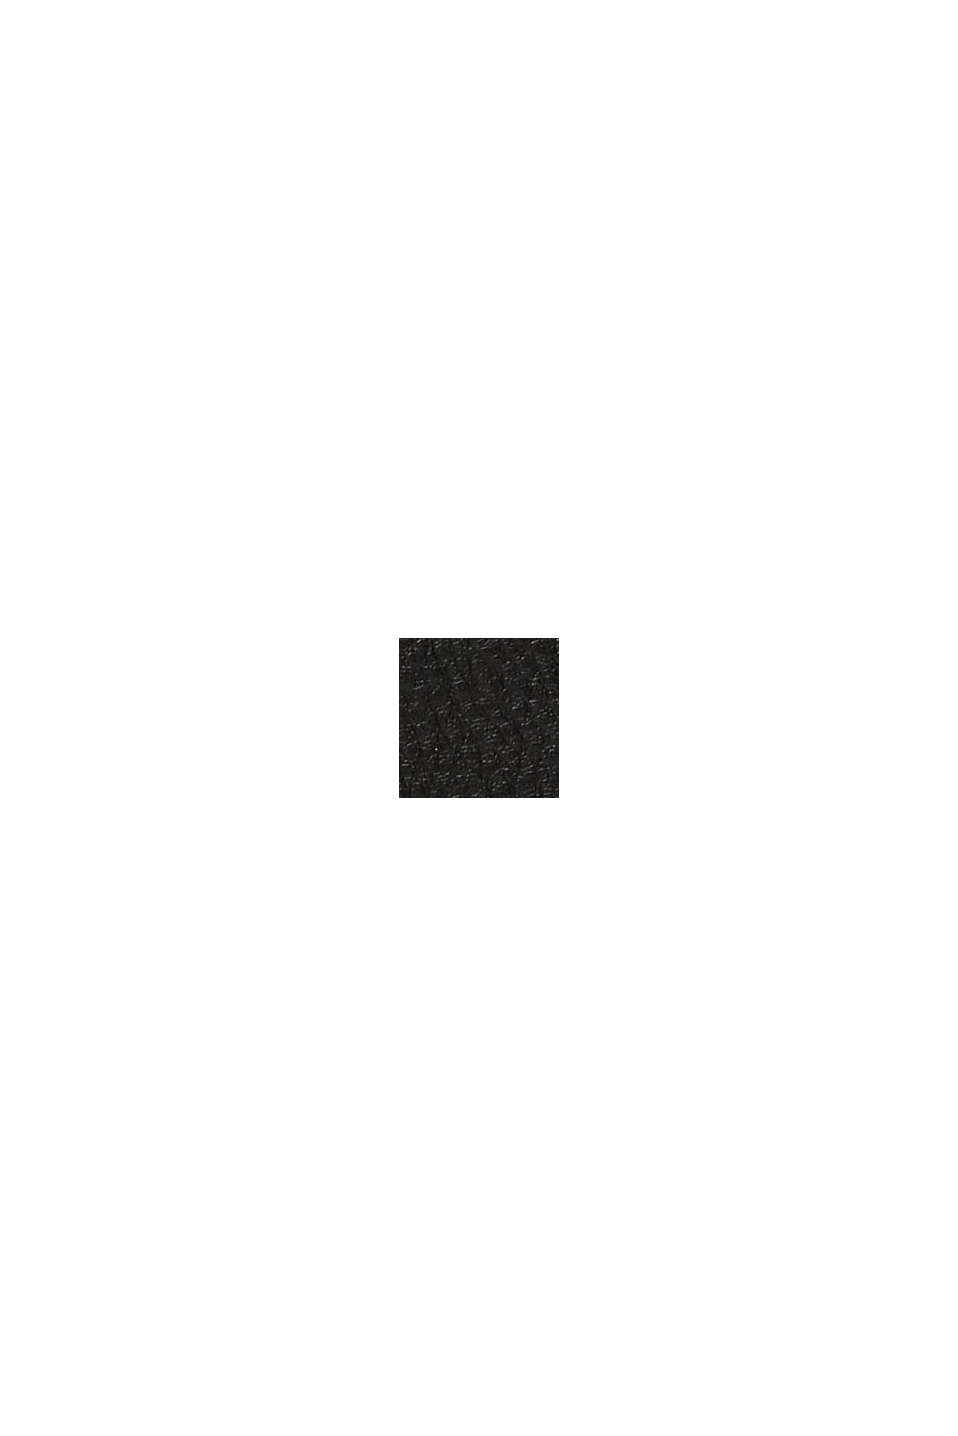 Billetera de polipiel con colgante de borla, BLACK, swatch